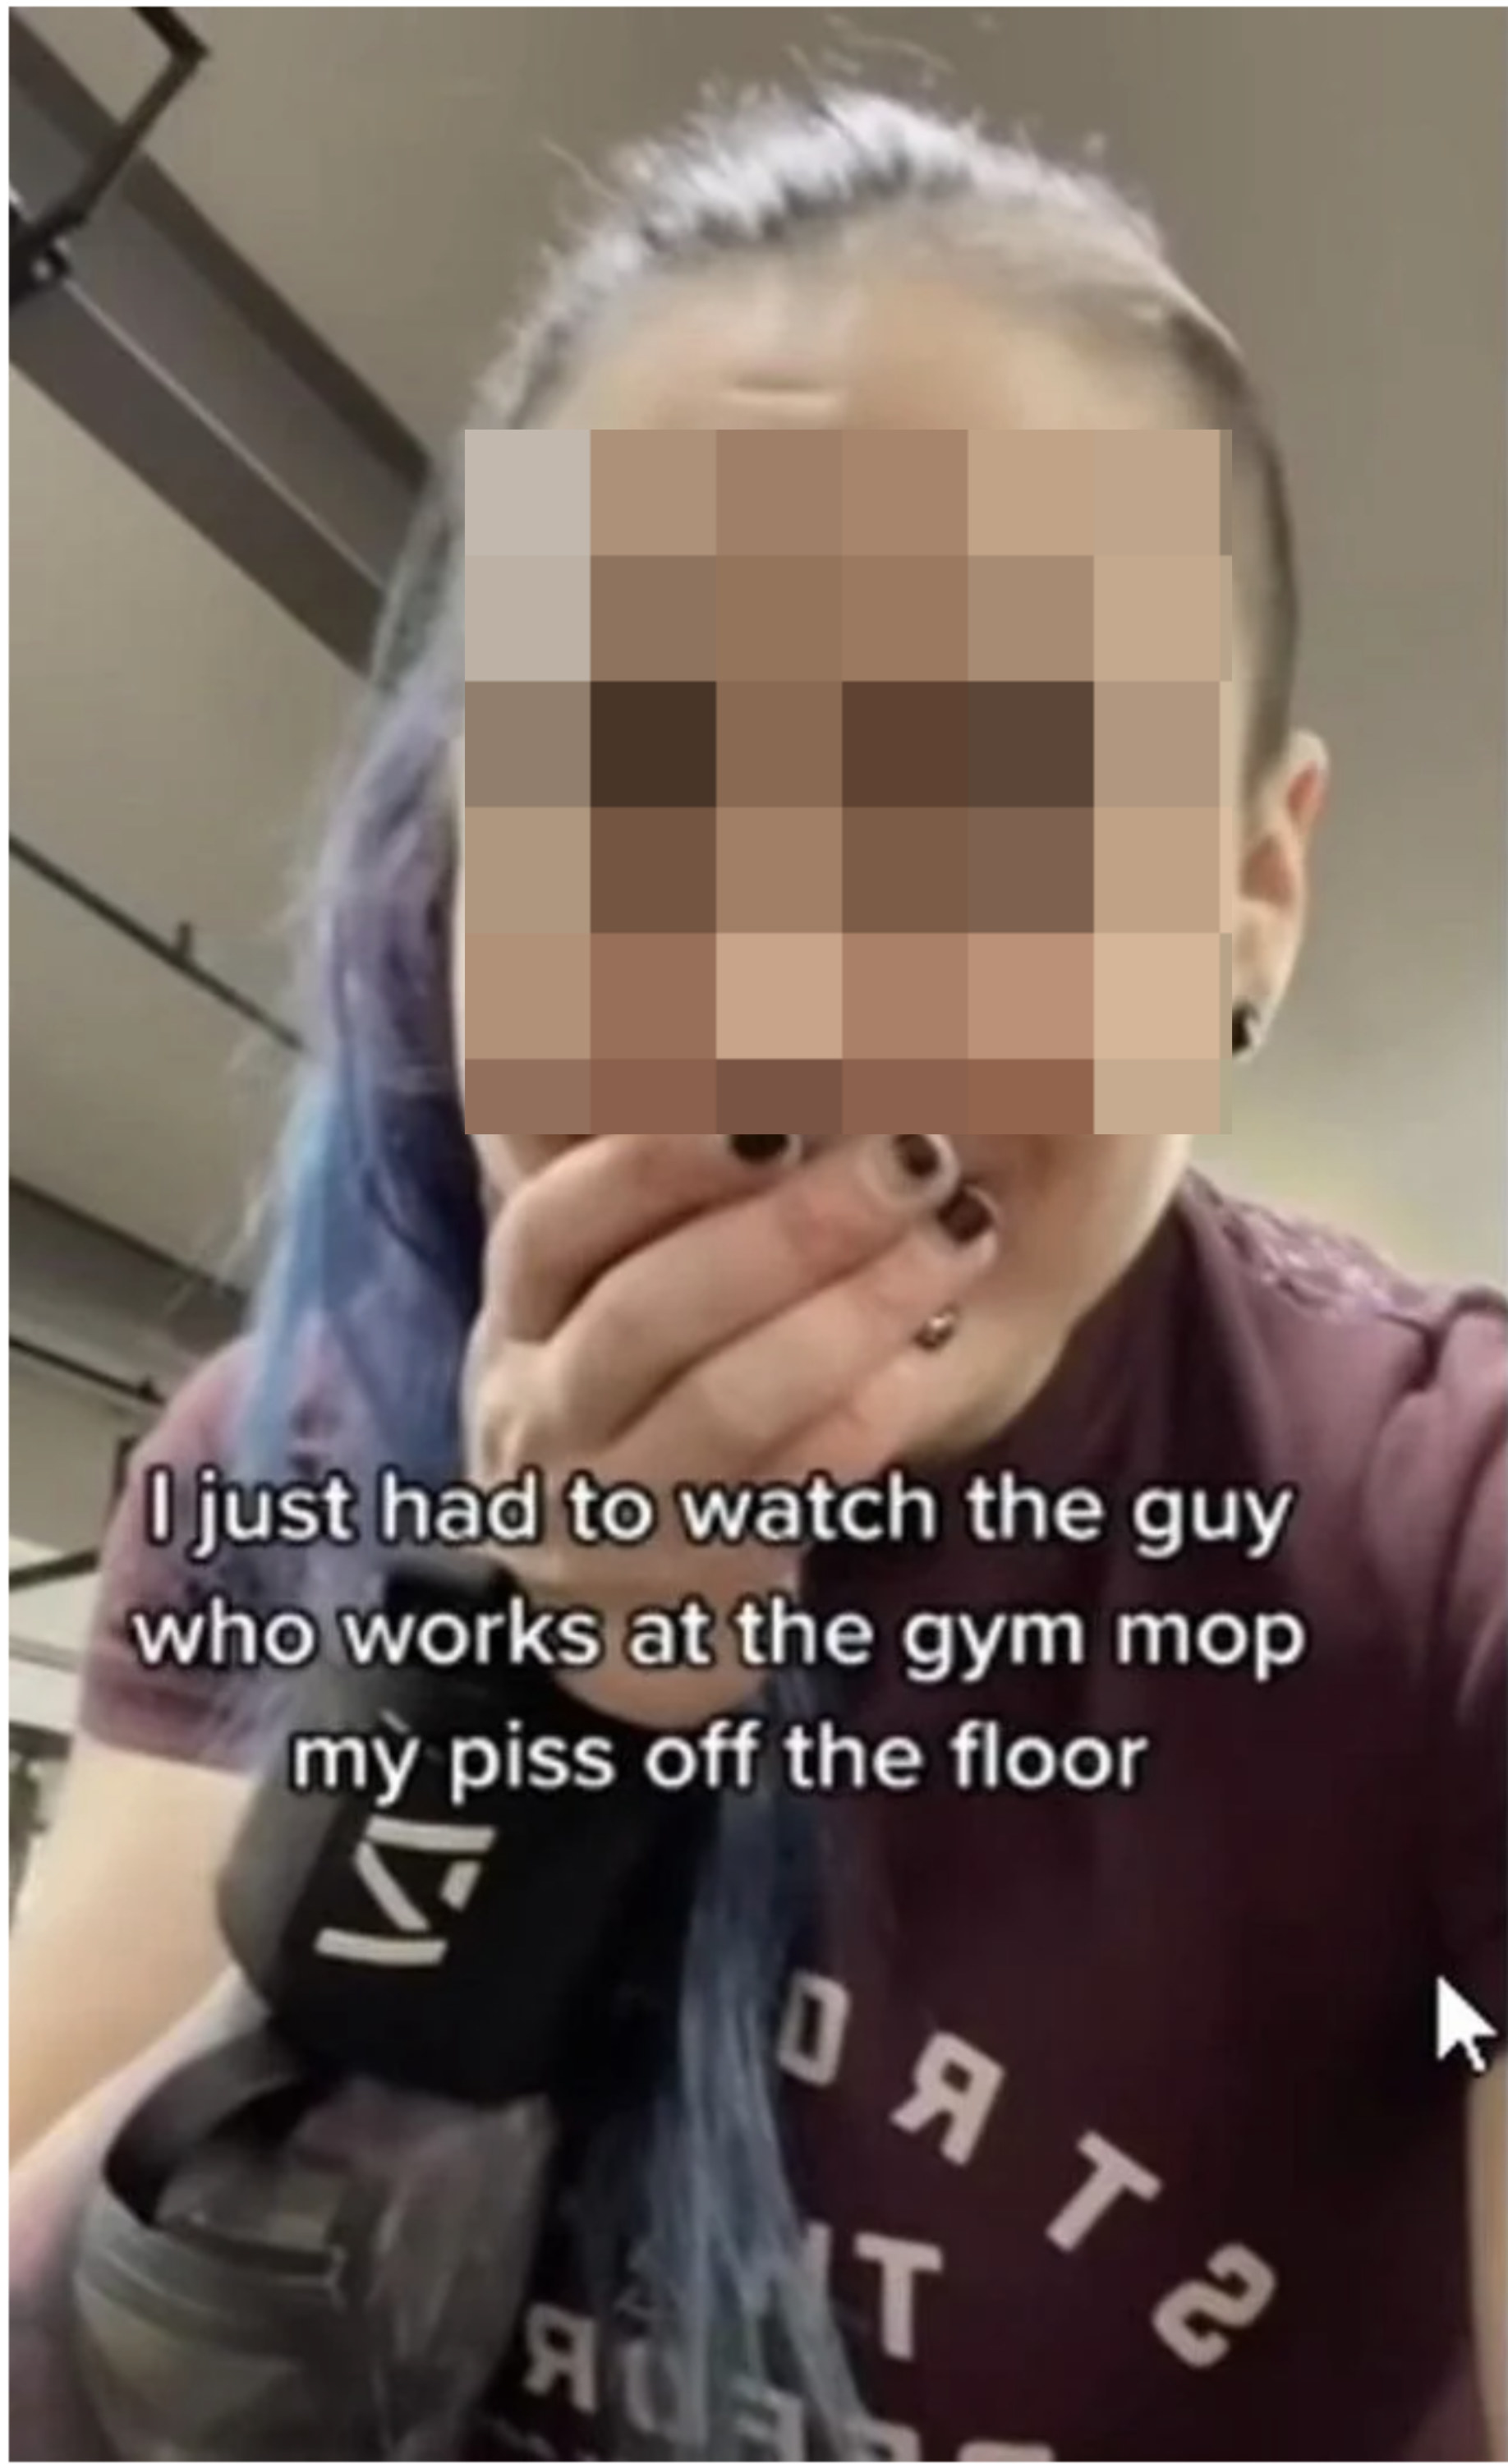 “我刚刚看的人在健身房工作拖我的尿floor"